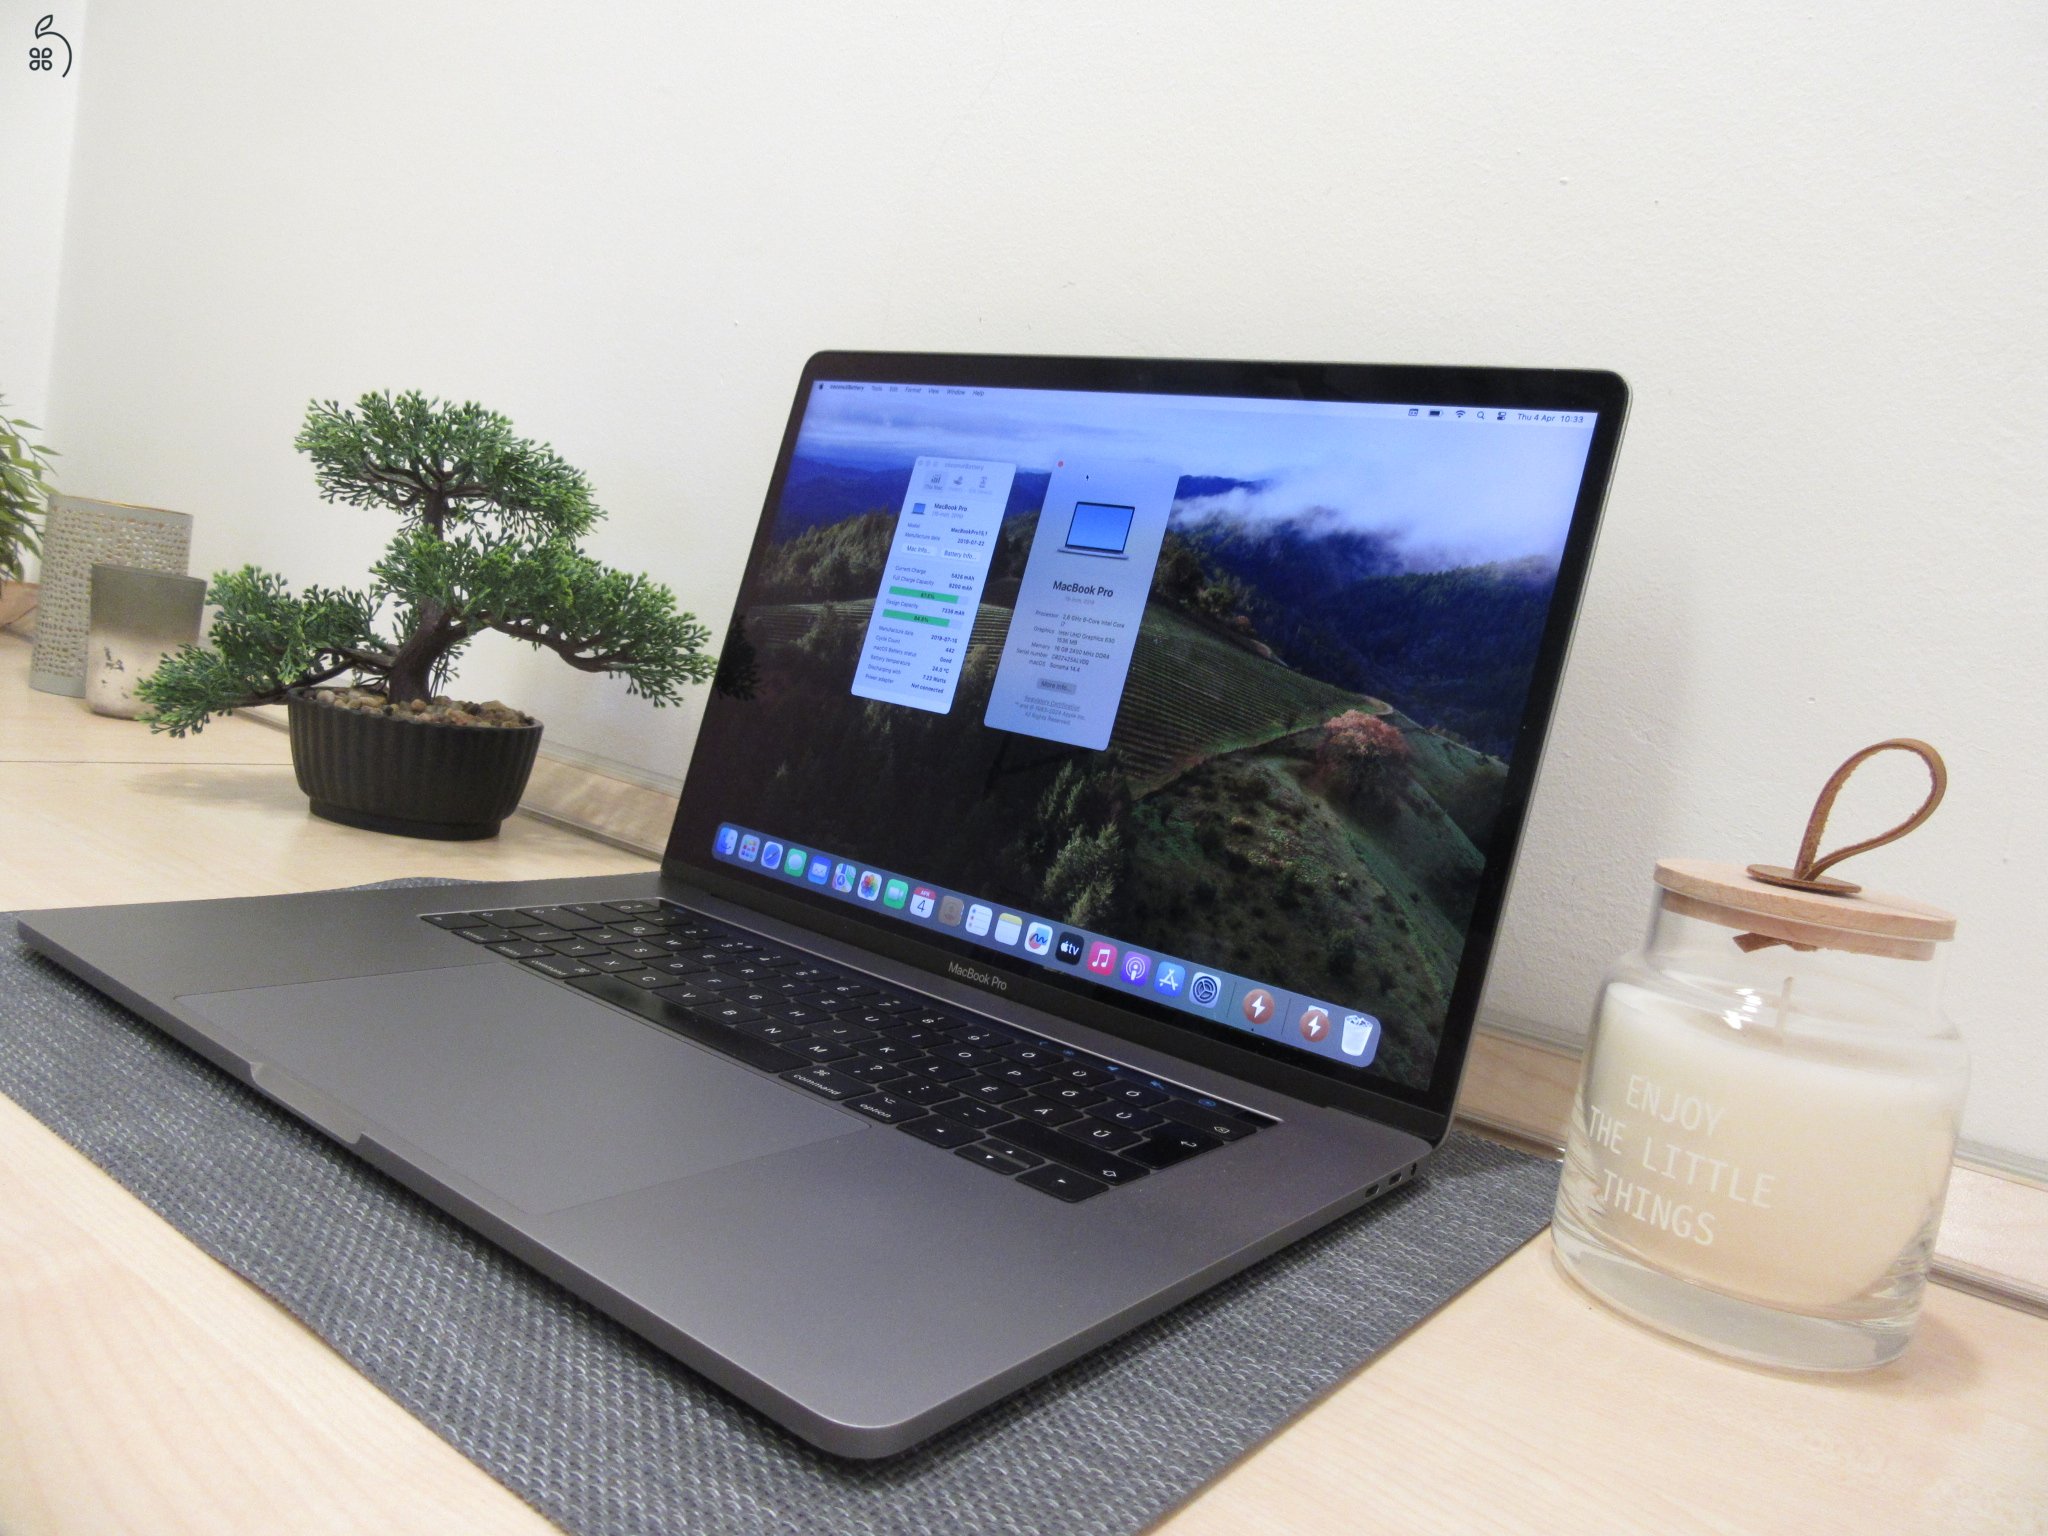  Apple Retina Macbook Pro 15 - 2019 - Használt, megkímélt 